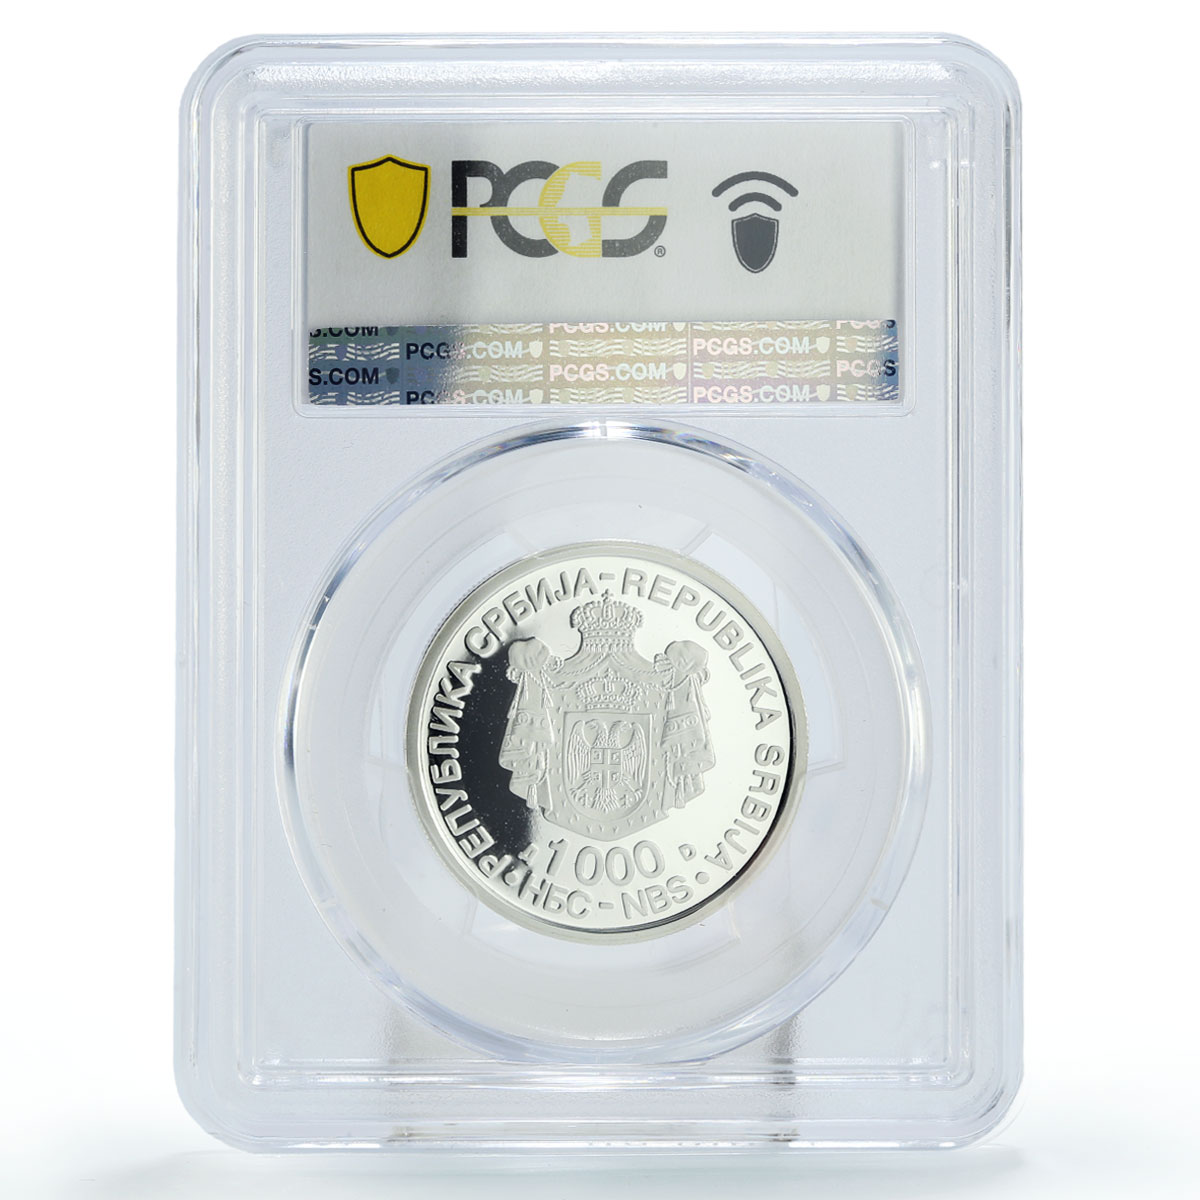 Serbia 1000 dinara Inventor Nicola Tesla Science PR68 PCGS silver coin 2006